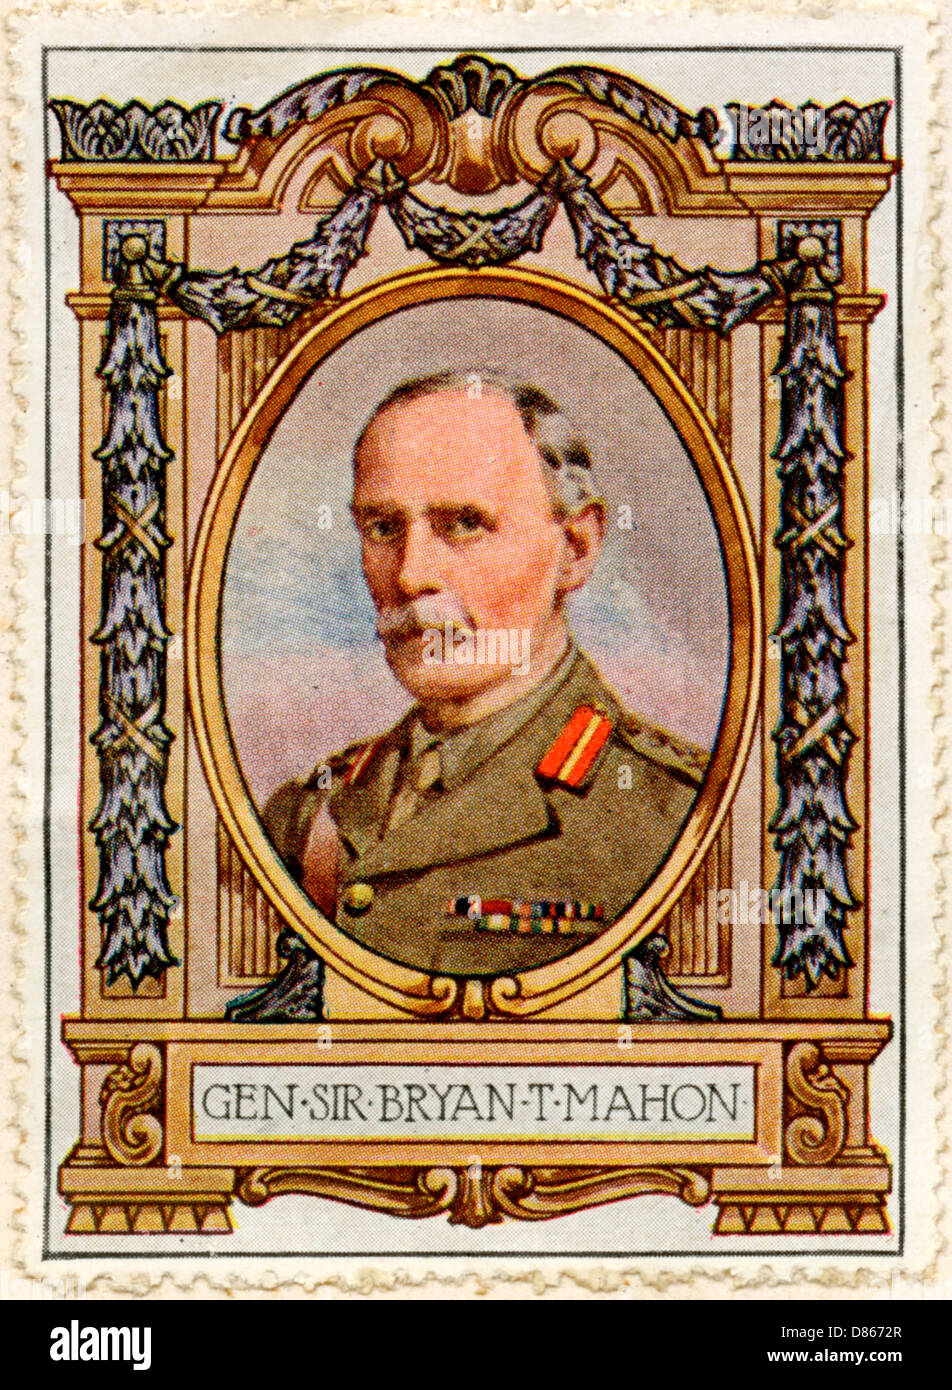 General Sir Bryan T. Mahon Stamp Stock Photo